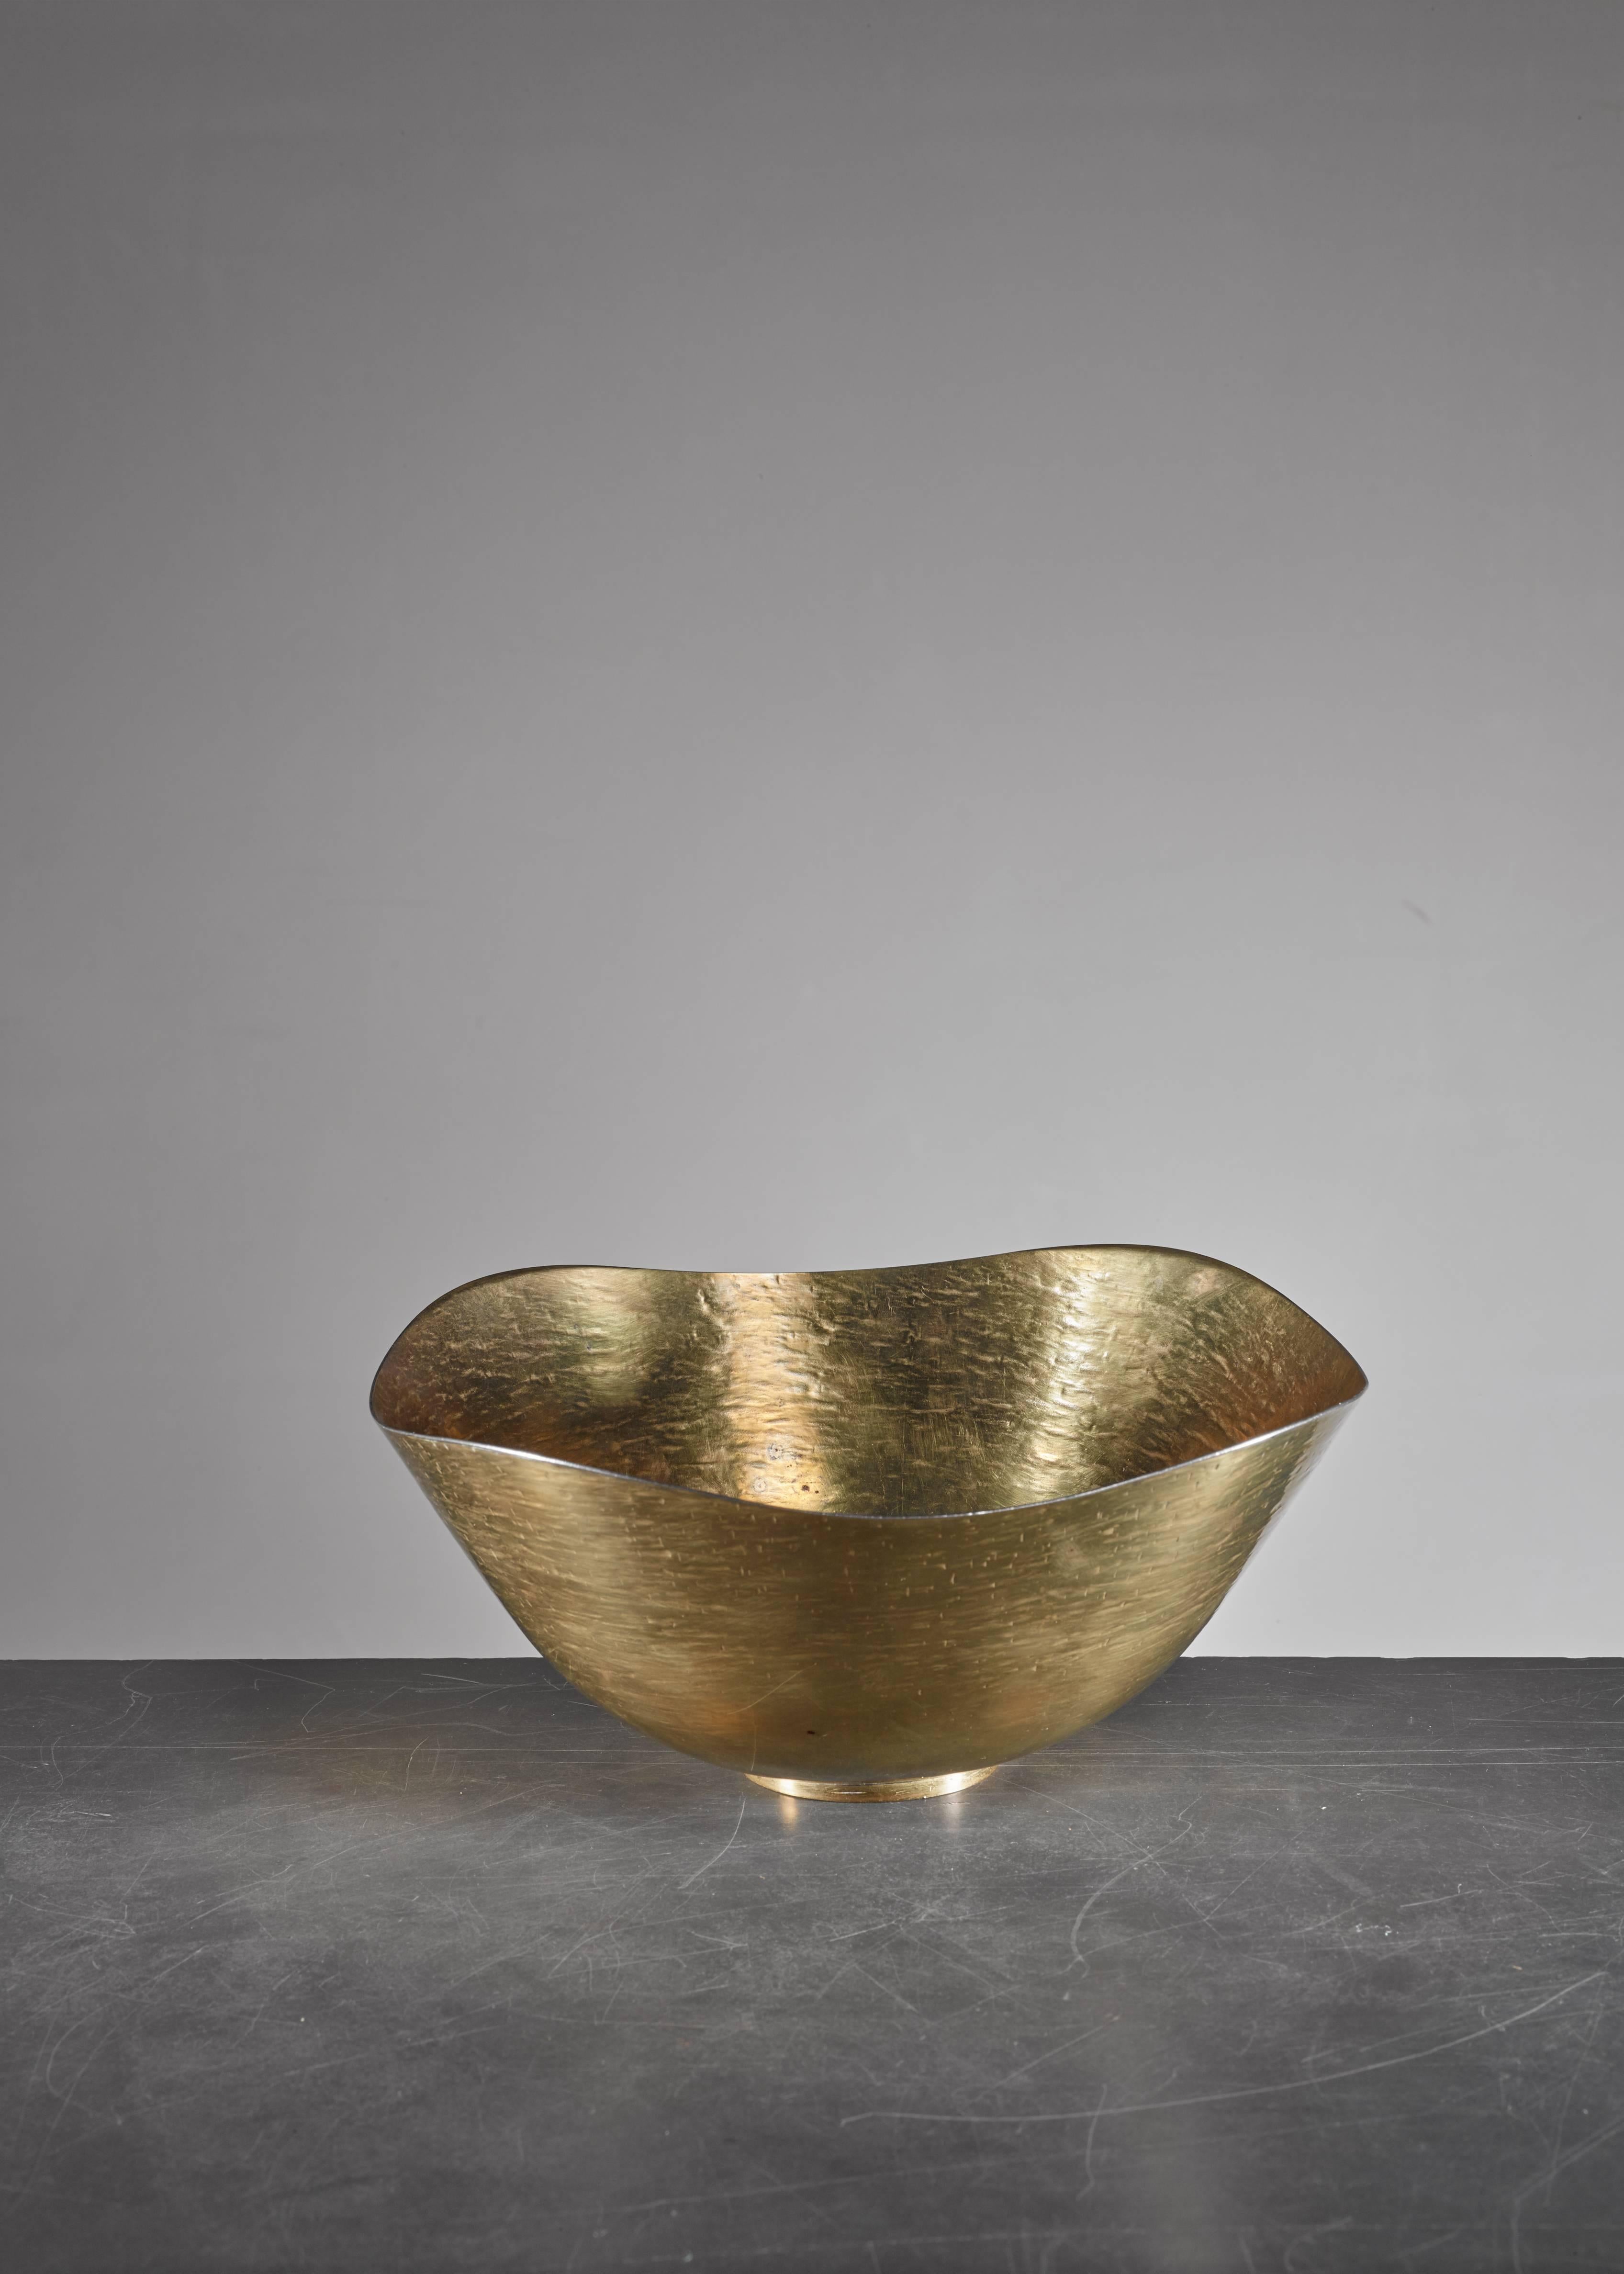 A hand-hammered brass bowl by Hayno Focken.

Focken (1905-1968) was a metalworker and silversmith who was associated with the ideas of the Deutscher Werkbund and Bauhaus in the 1930s. Fockeh received his education at the Burg Giebichenstein